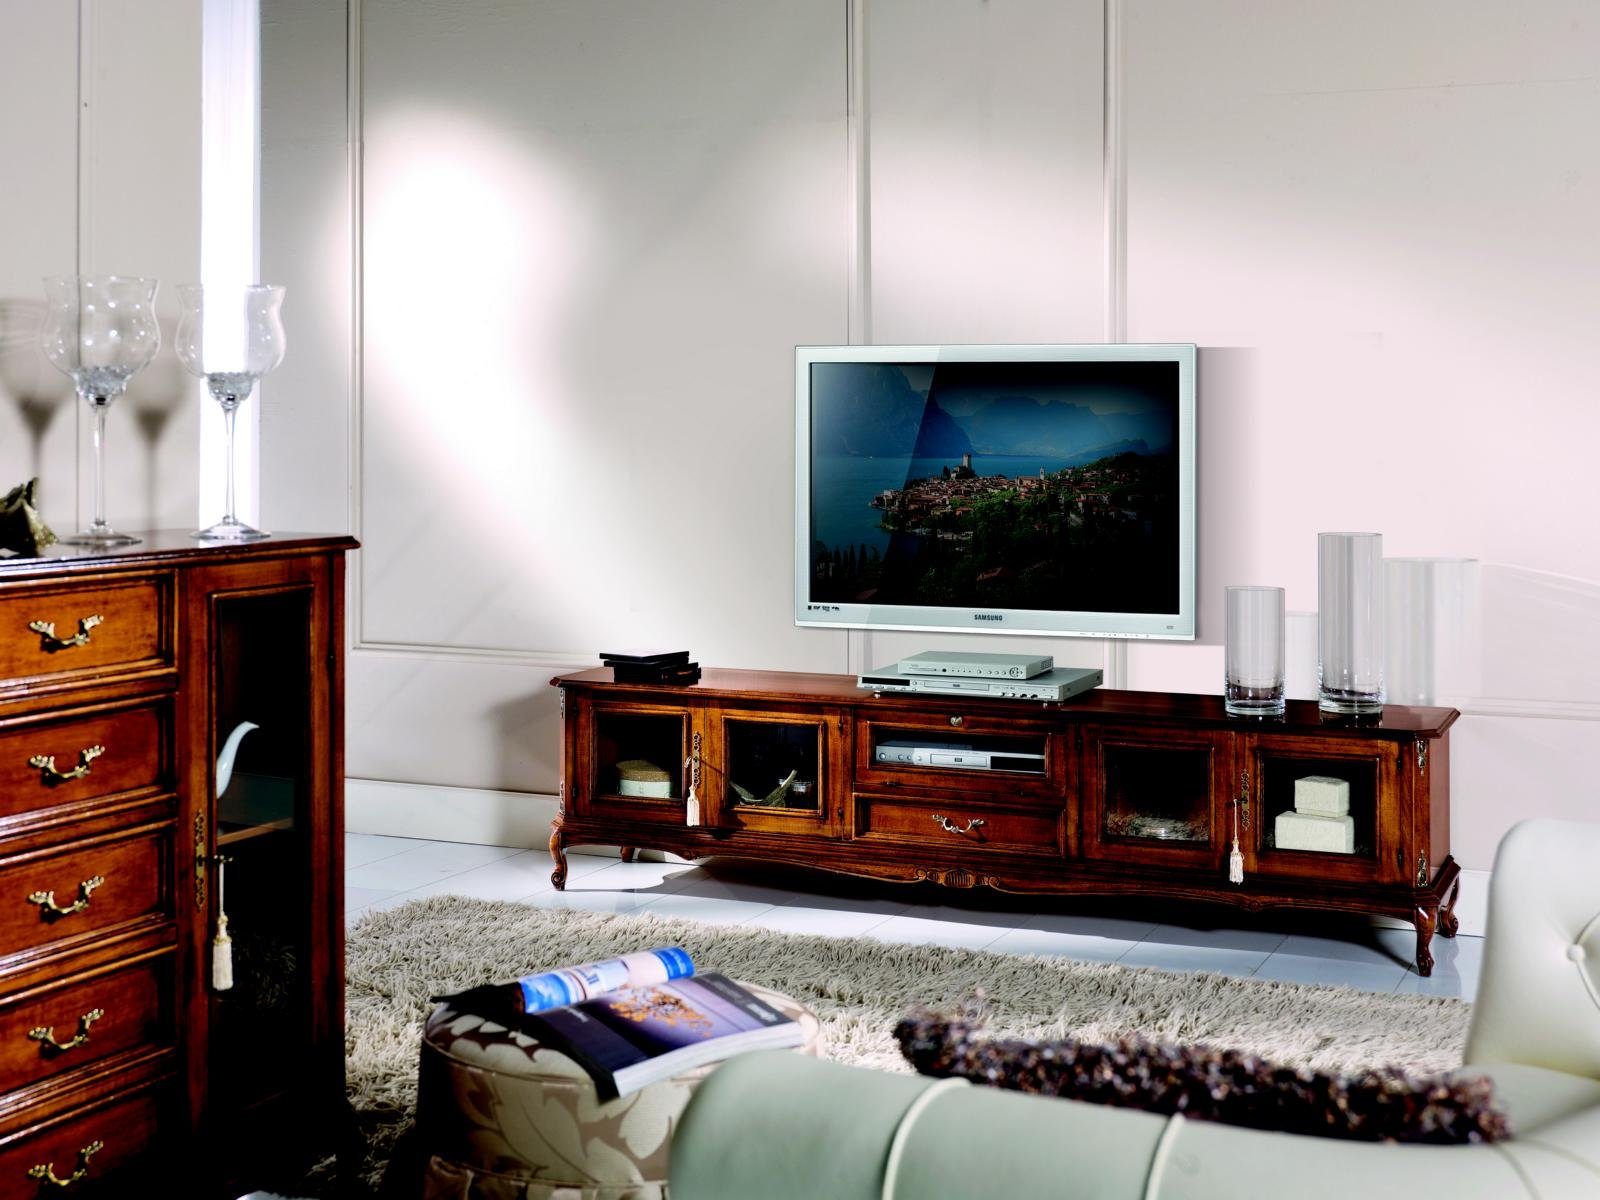 JVmoebel TV-Schrank Luxus Sideboard tv Schrank rtv Italienische Möbel Wohnzimmer Holz Barock Stil